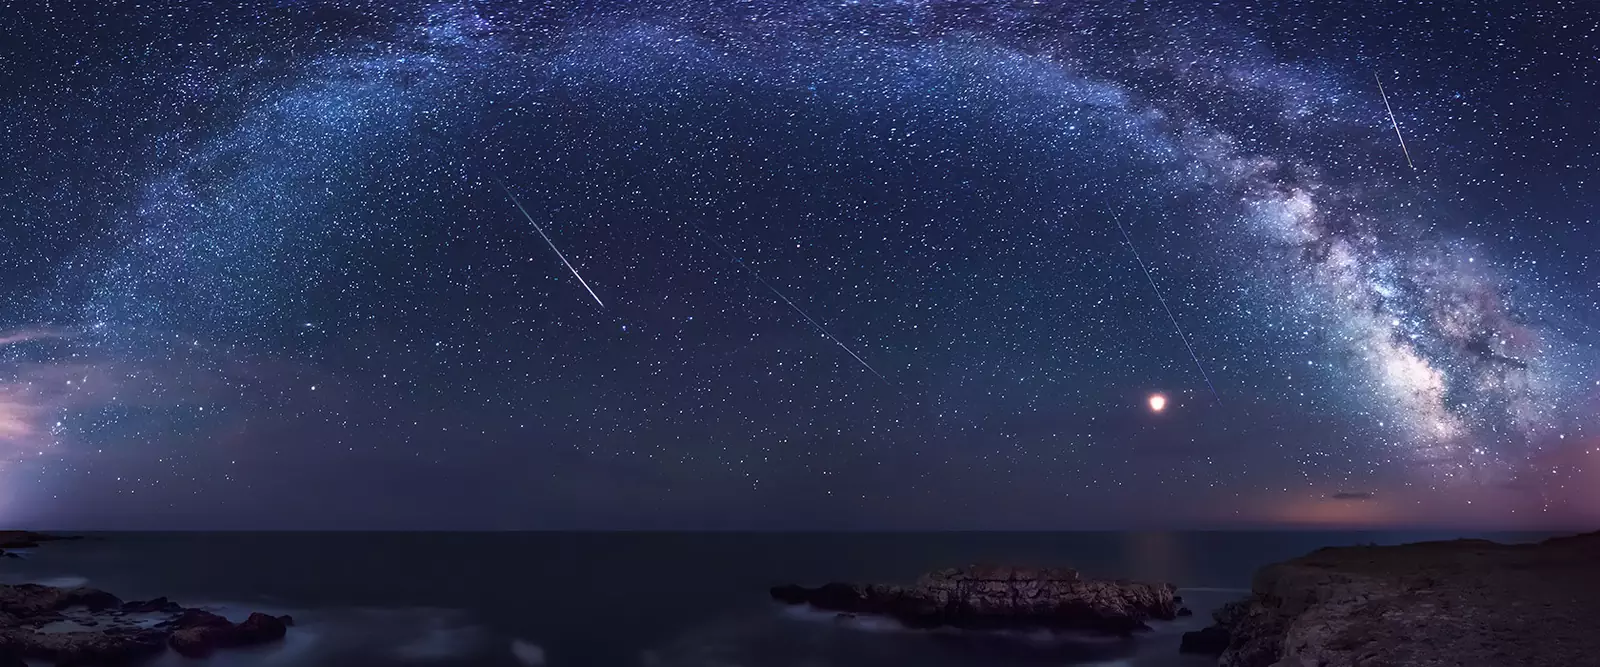 Метеорный поток также называют звездопадом или звёздным дождём.